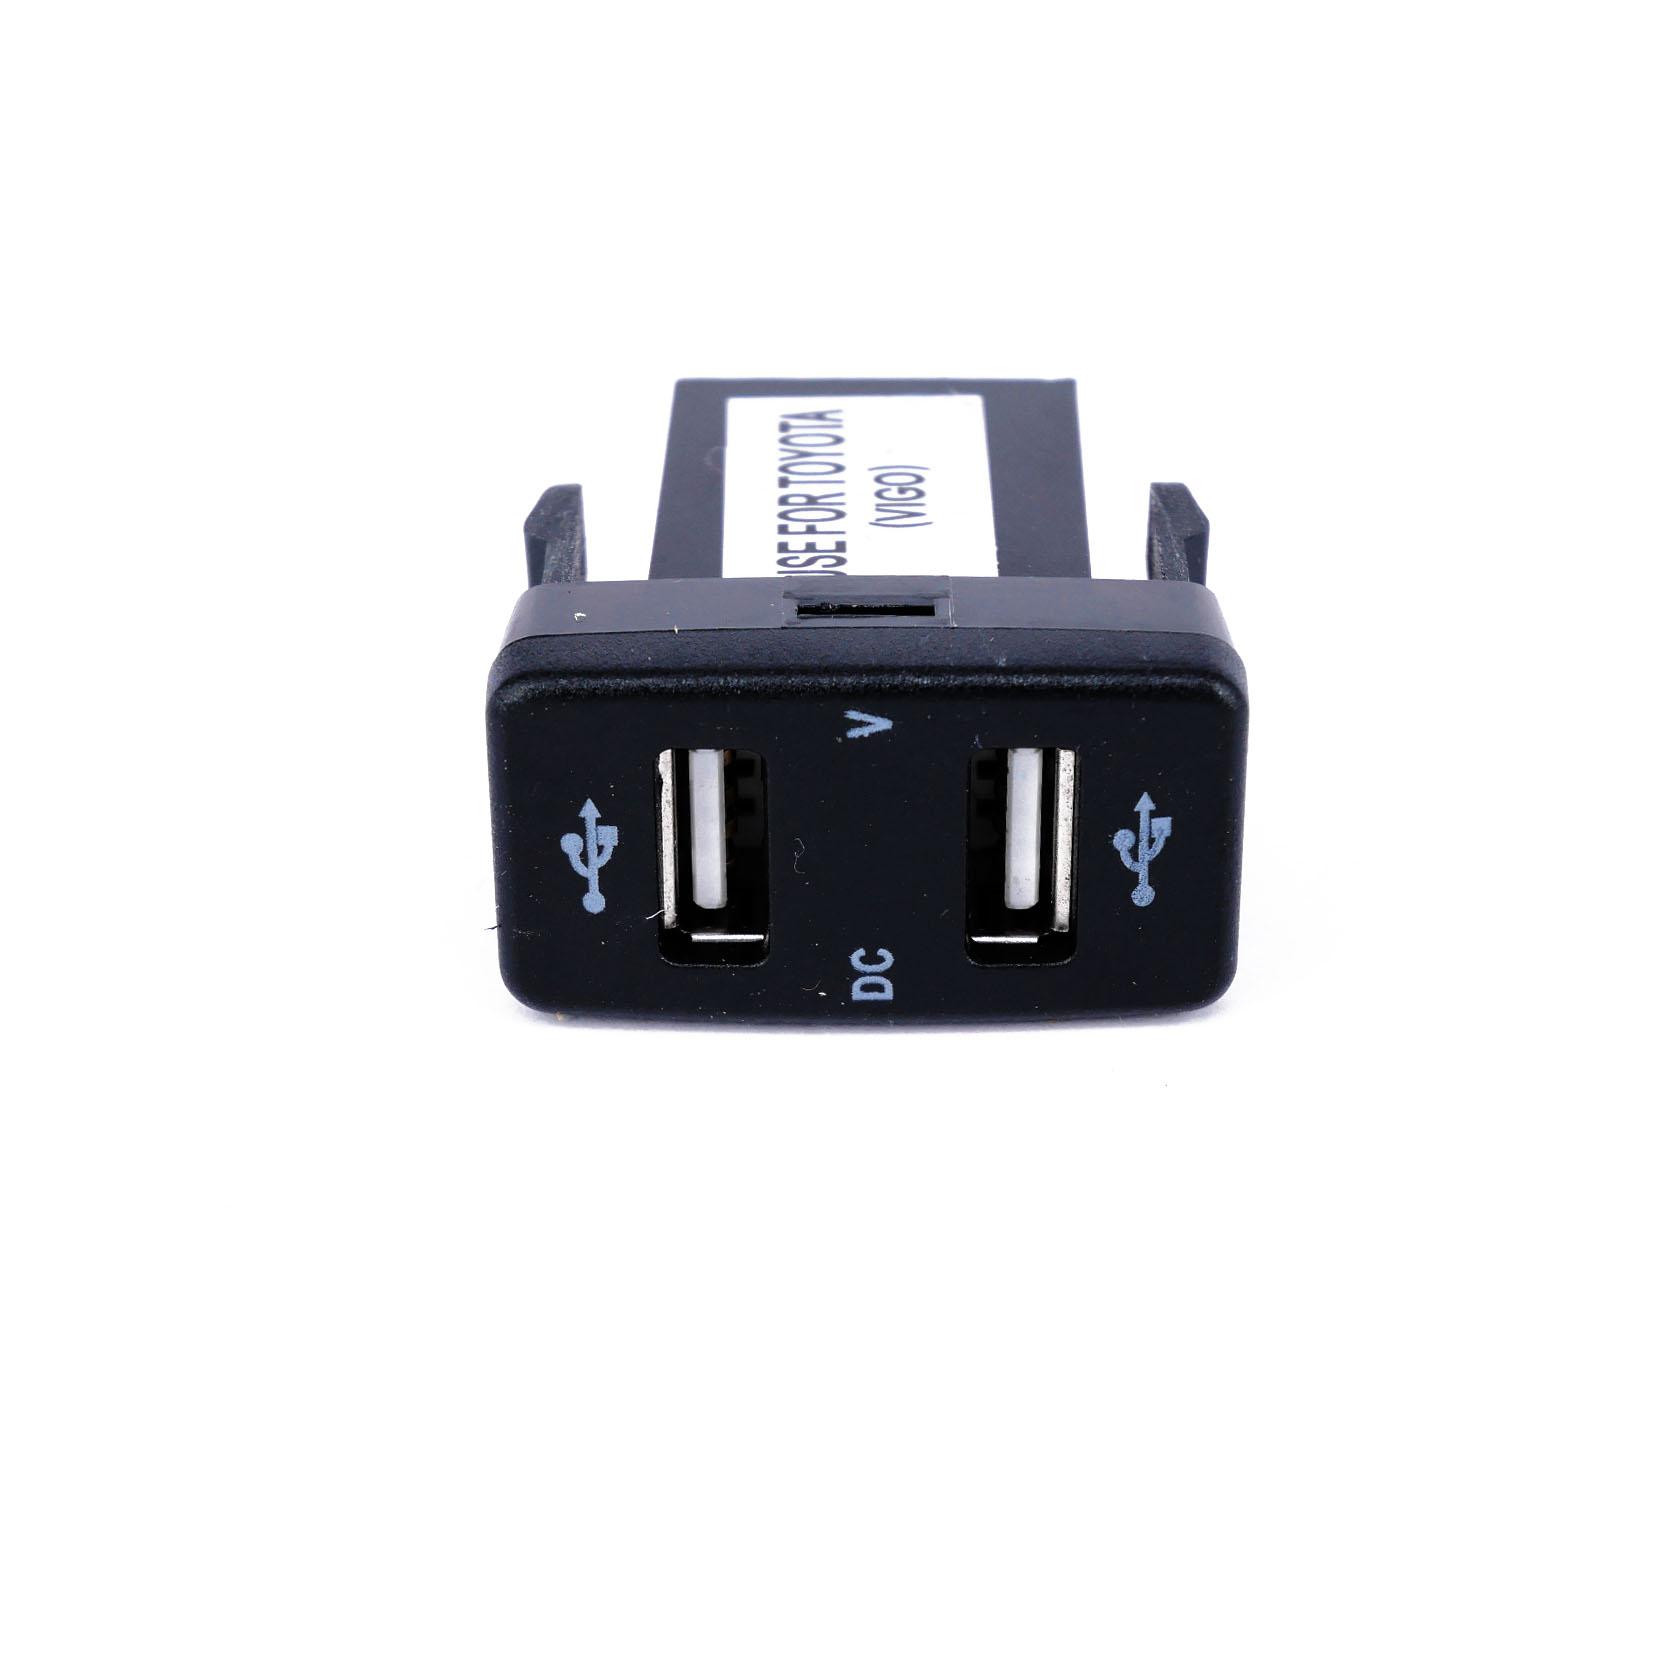 PLUG ช่องต่อ USB 2 ช่อง มี ดิจิตอลบอกโวล์ + Volt meter วัดสภาพแบตเตอร์รี่ วัดสภาพไดชาร์จ LED สีน้ำเงิน 3 หลัก สำหรับรถเก๋ง TOYOTA VIGO ตรงรุ่น สำหรับ TOYOTA ทุกรุ่น เช่น VIGO,FORTUNER